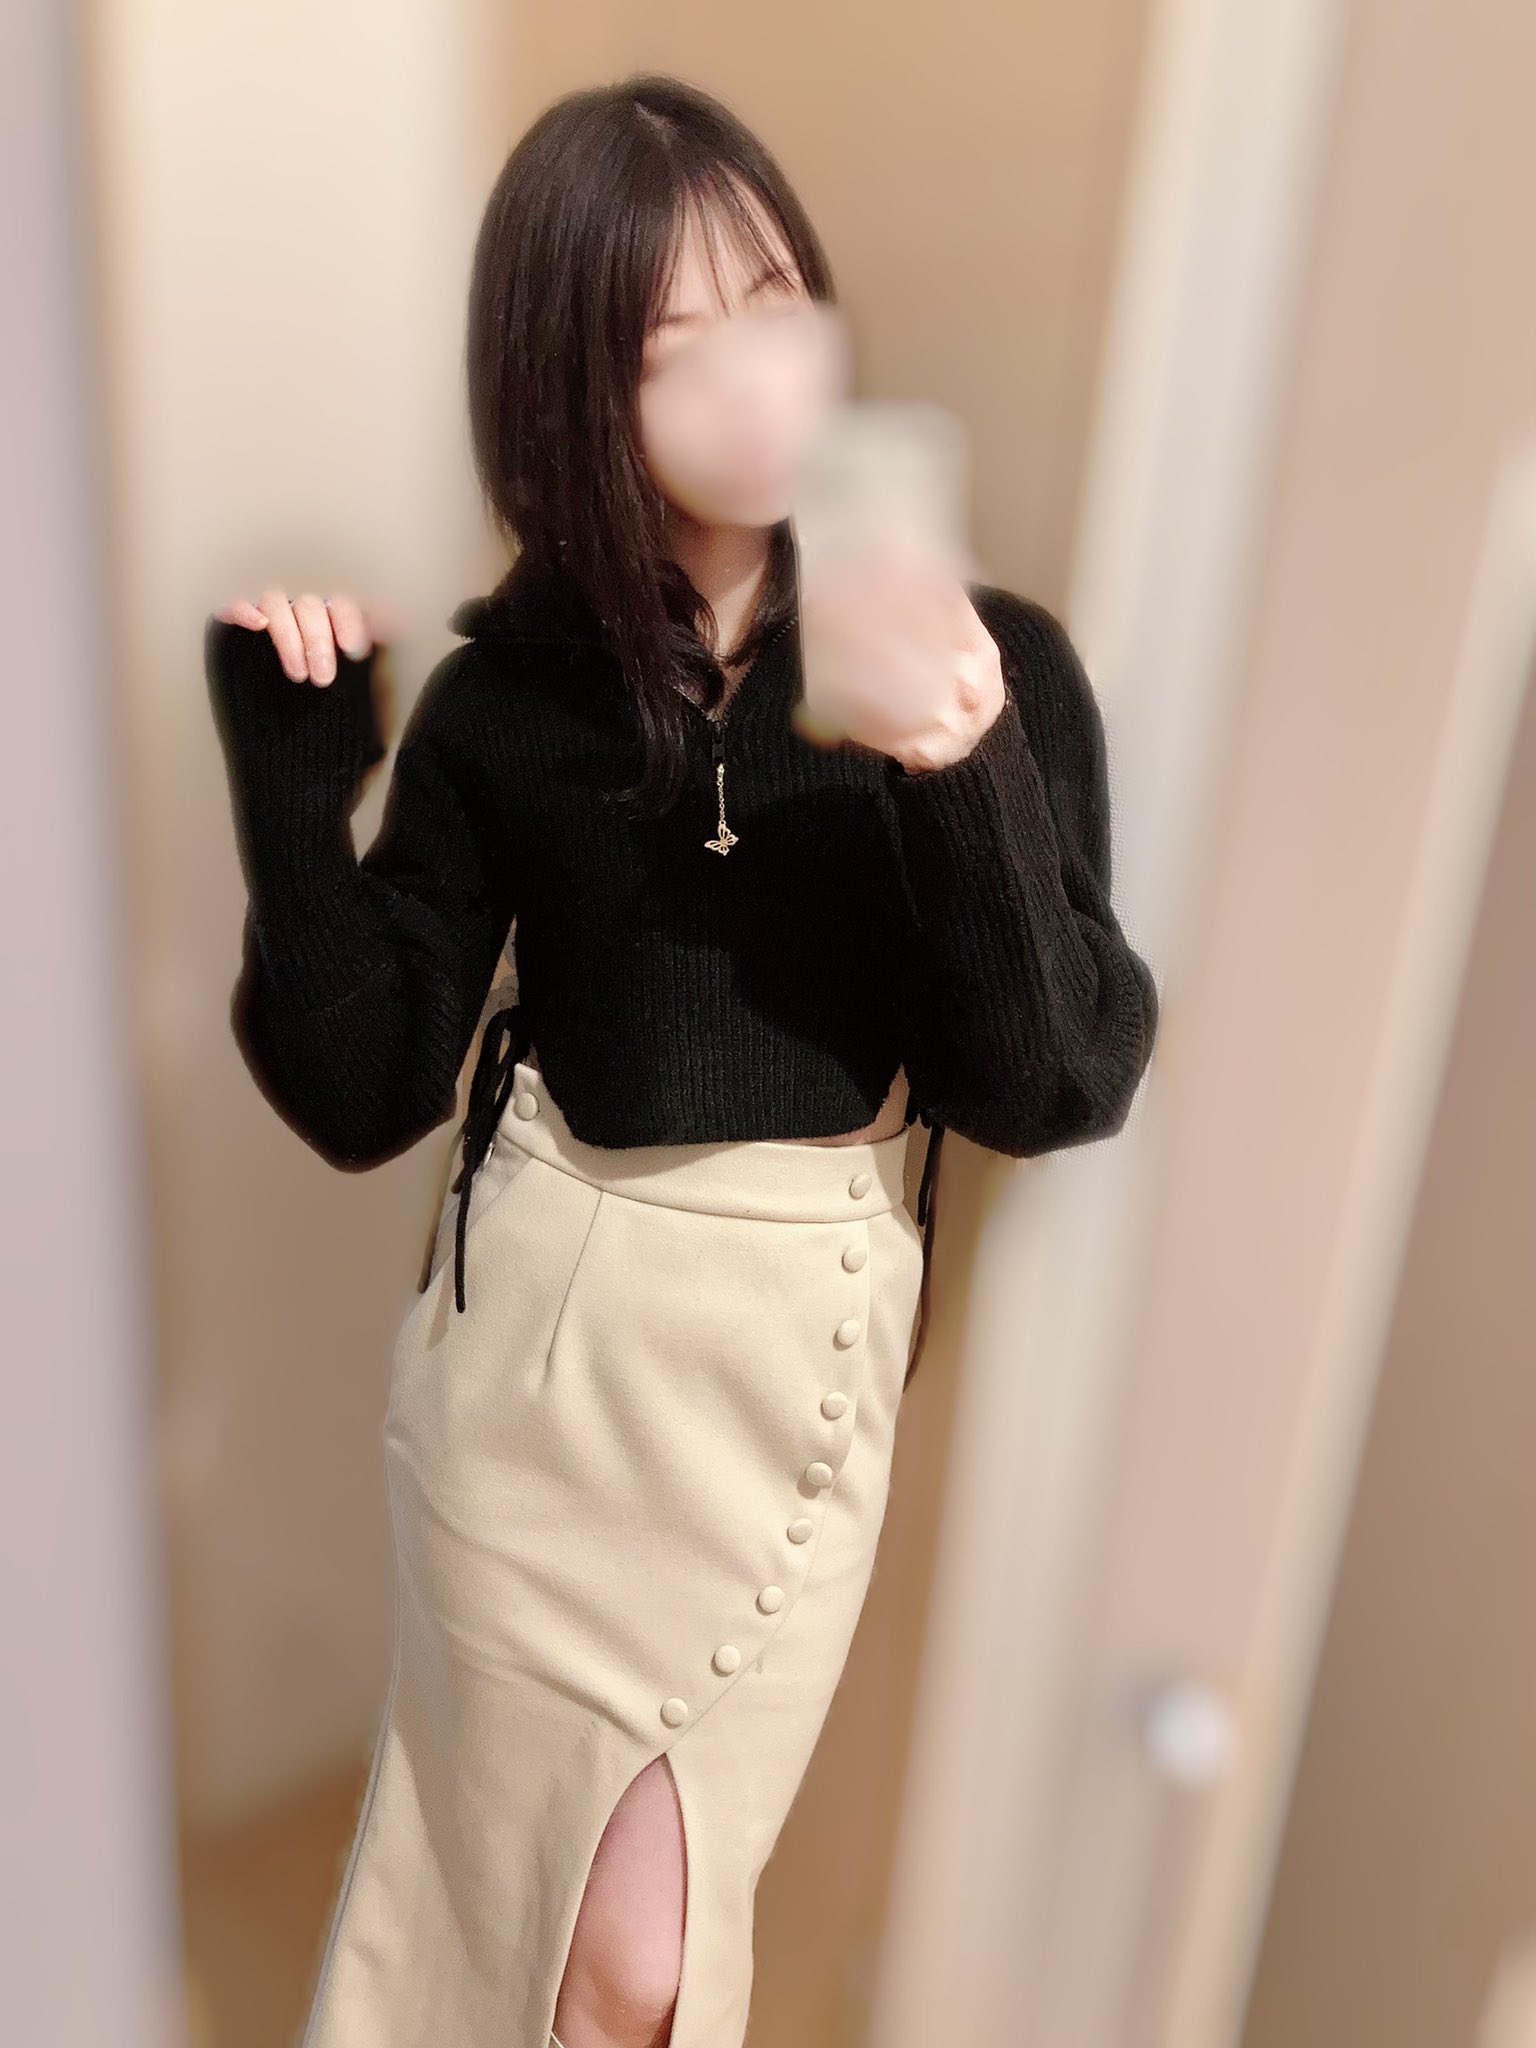 andmary ミッシィニットスカート Sサイズ 素晴らしい外見 64.0%OFF 0123.sub.jp